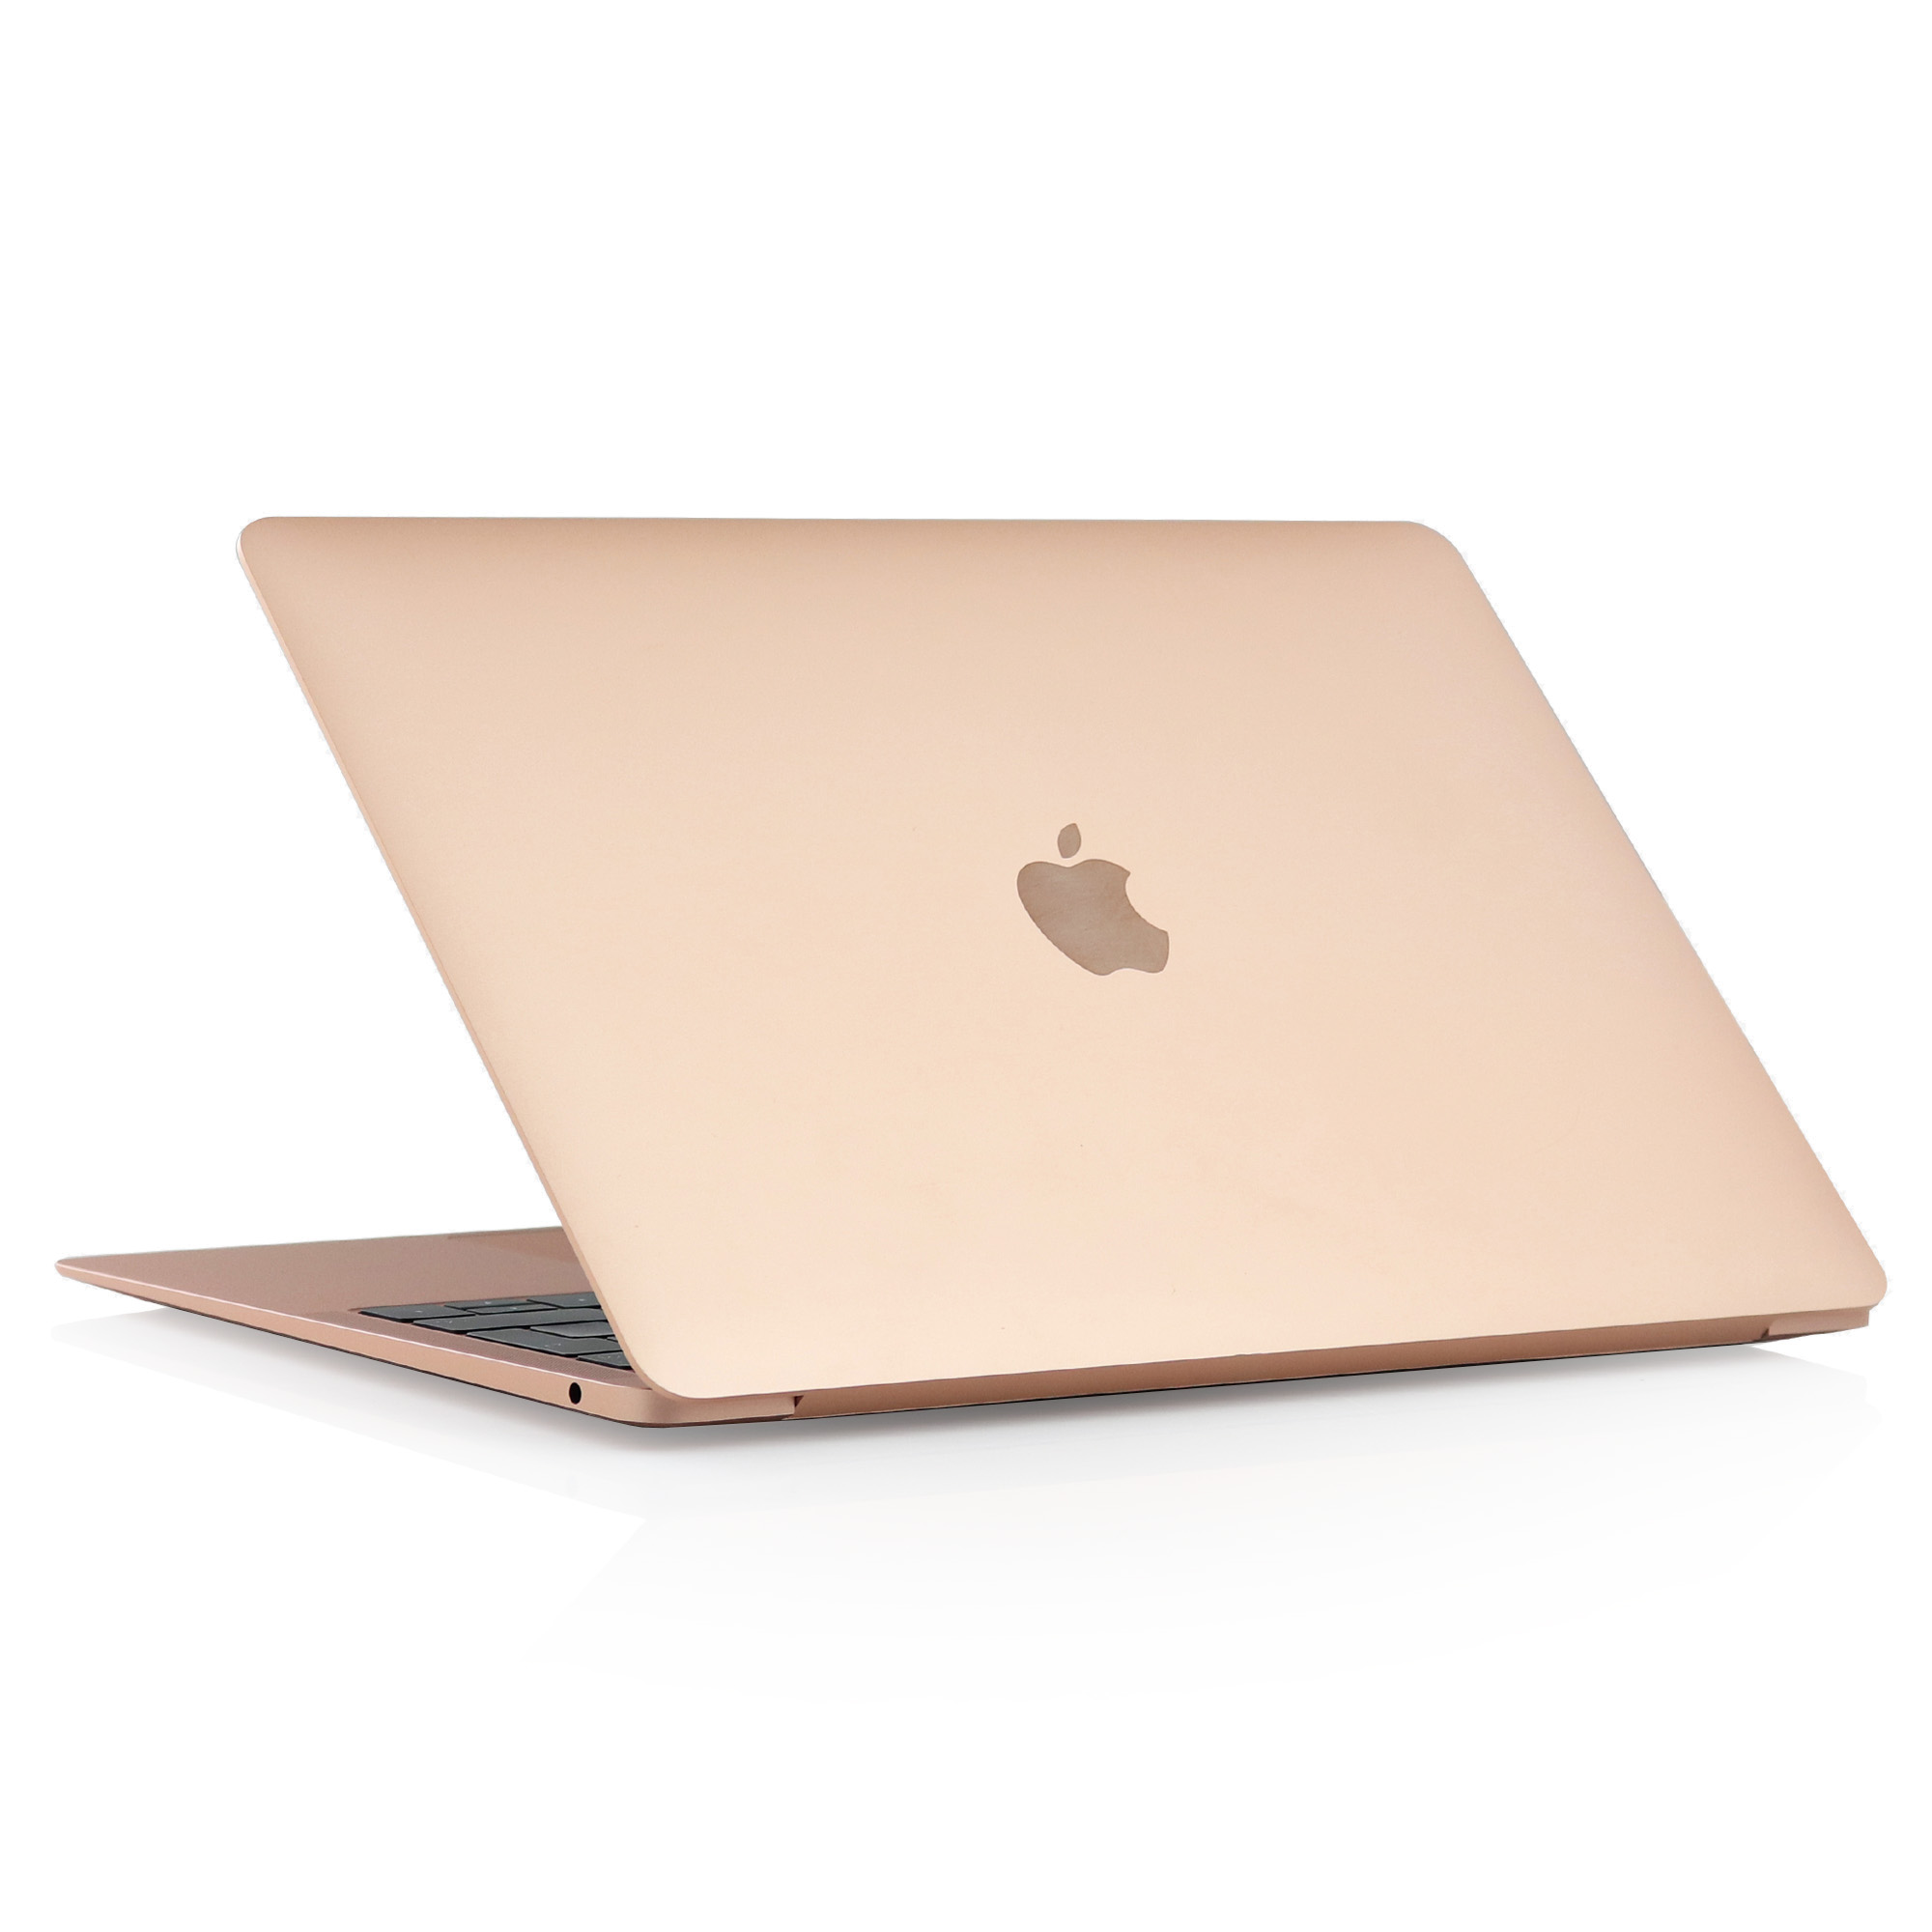 激安な 2020 ローズゴールド M1 Air MacBook Apple MacBook本体 ...